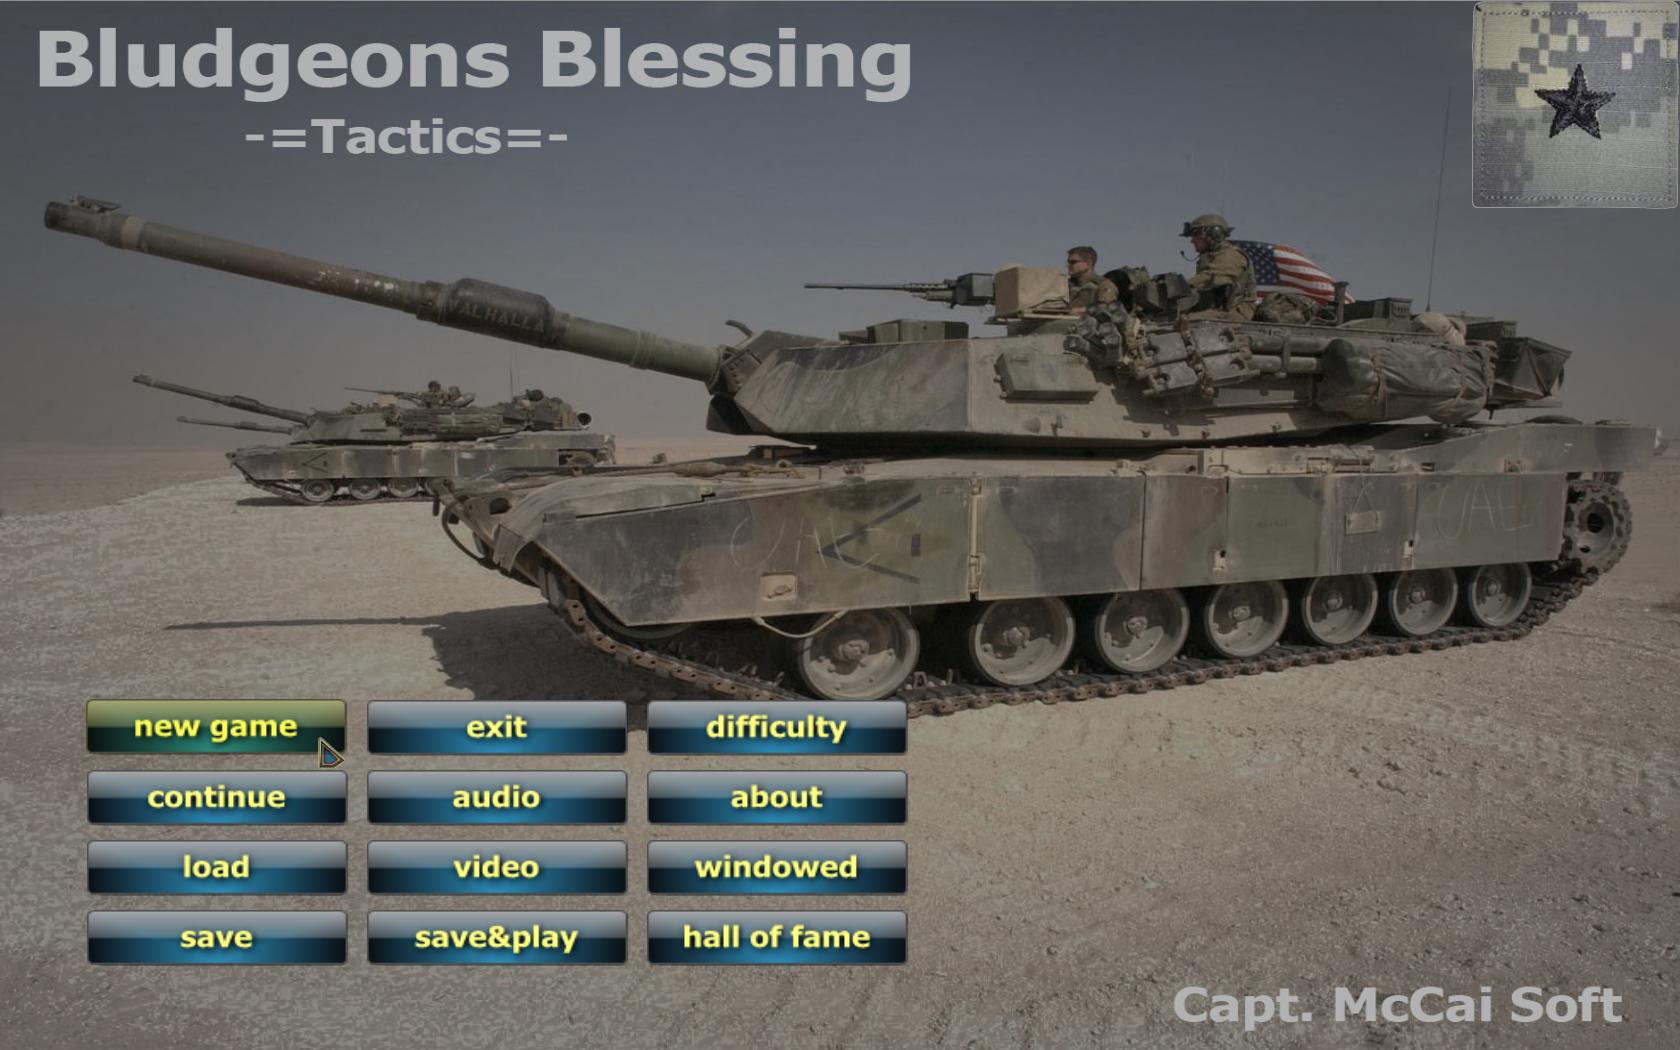 Tactics: Bludgeons Blessing screenshot